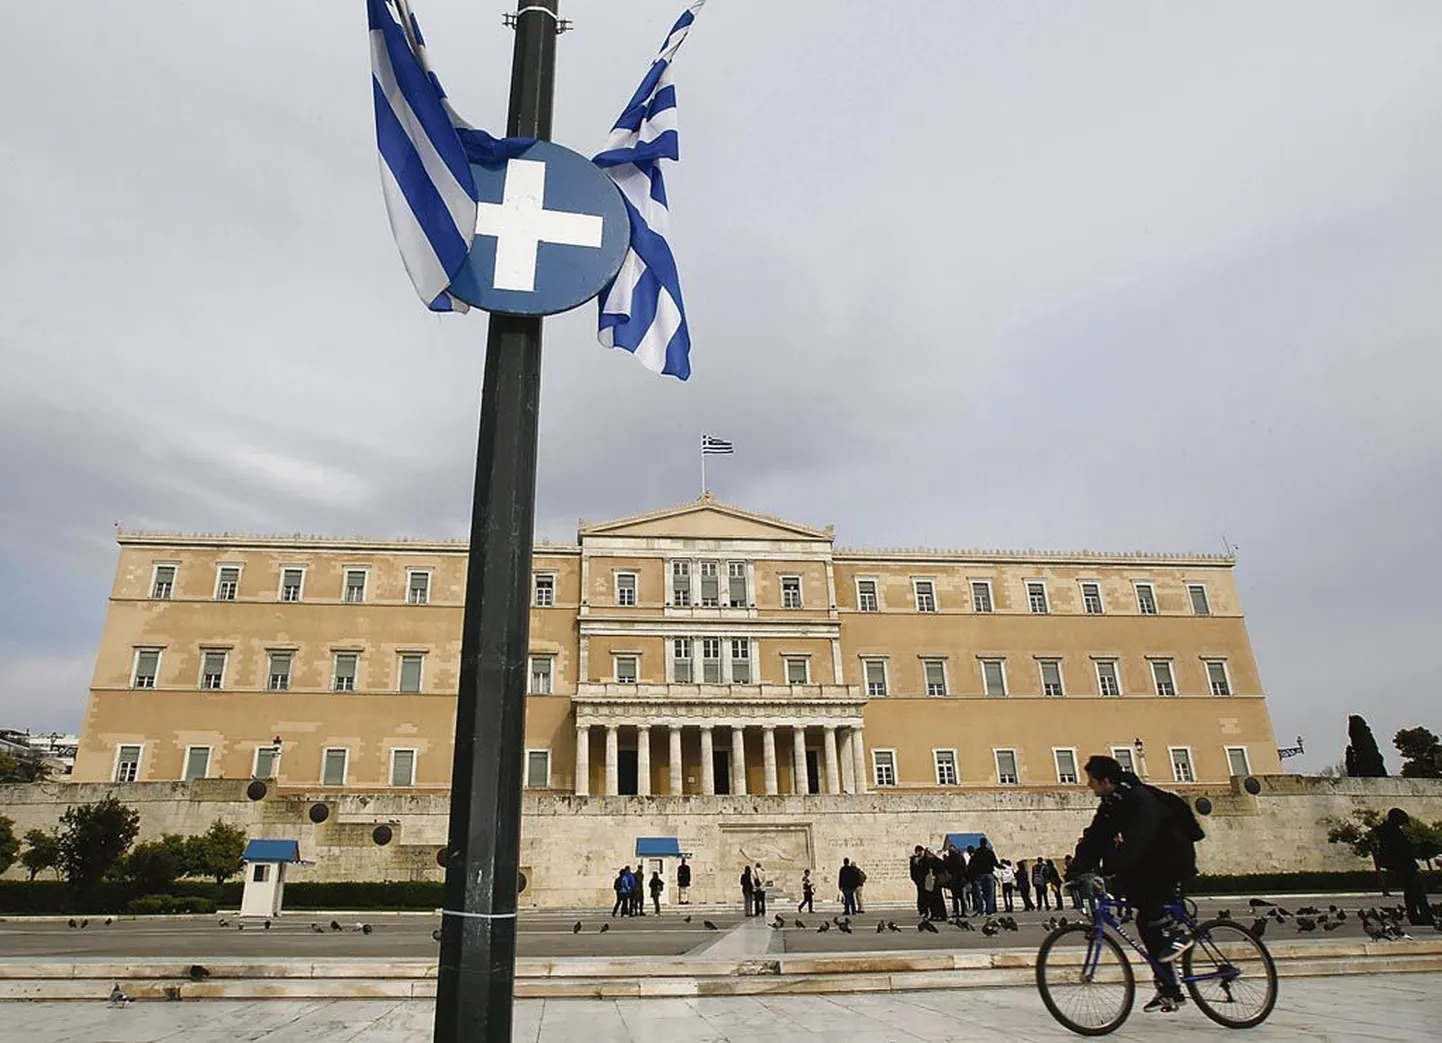 Kreeka parlament peab veelgi rahval püksirihma pingutama, sest Euroopa Keskpank hoiatas, et riigile antav abi ei ole põhjatu. Kreeka võlgu korstnasse kirjutada samuti ei soovita, need tuleb hellenitel ära õiendada.